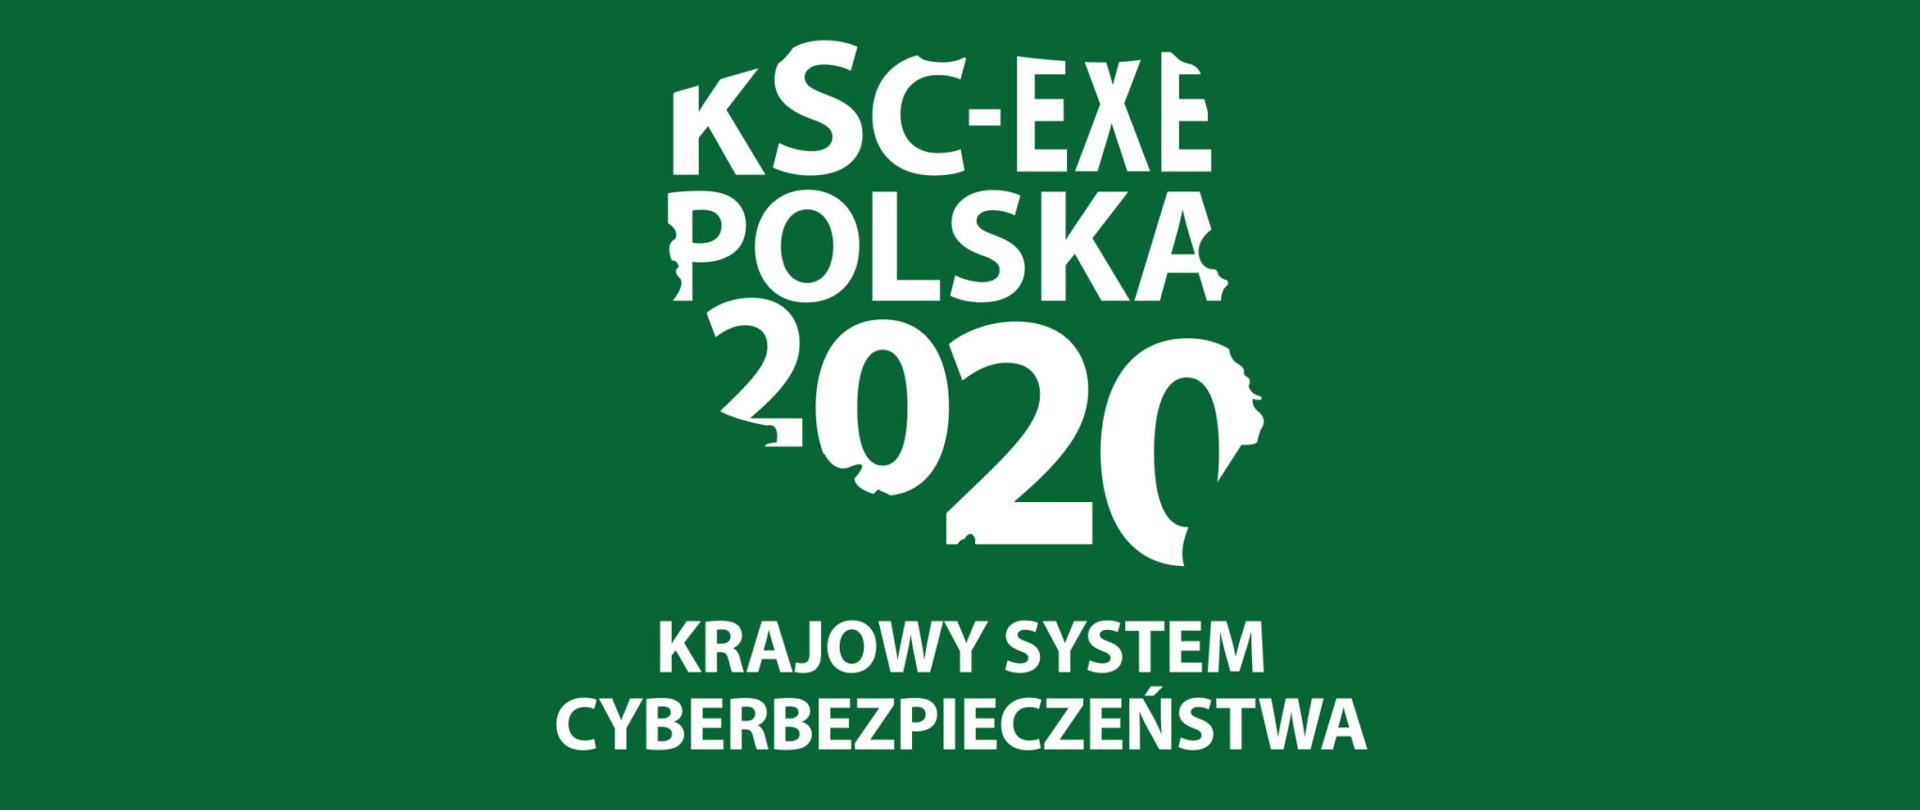 Napis KSC-EXE Polska 2020 na zielonym tle, logo ćwiczeń